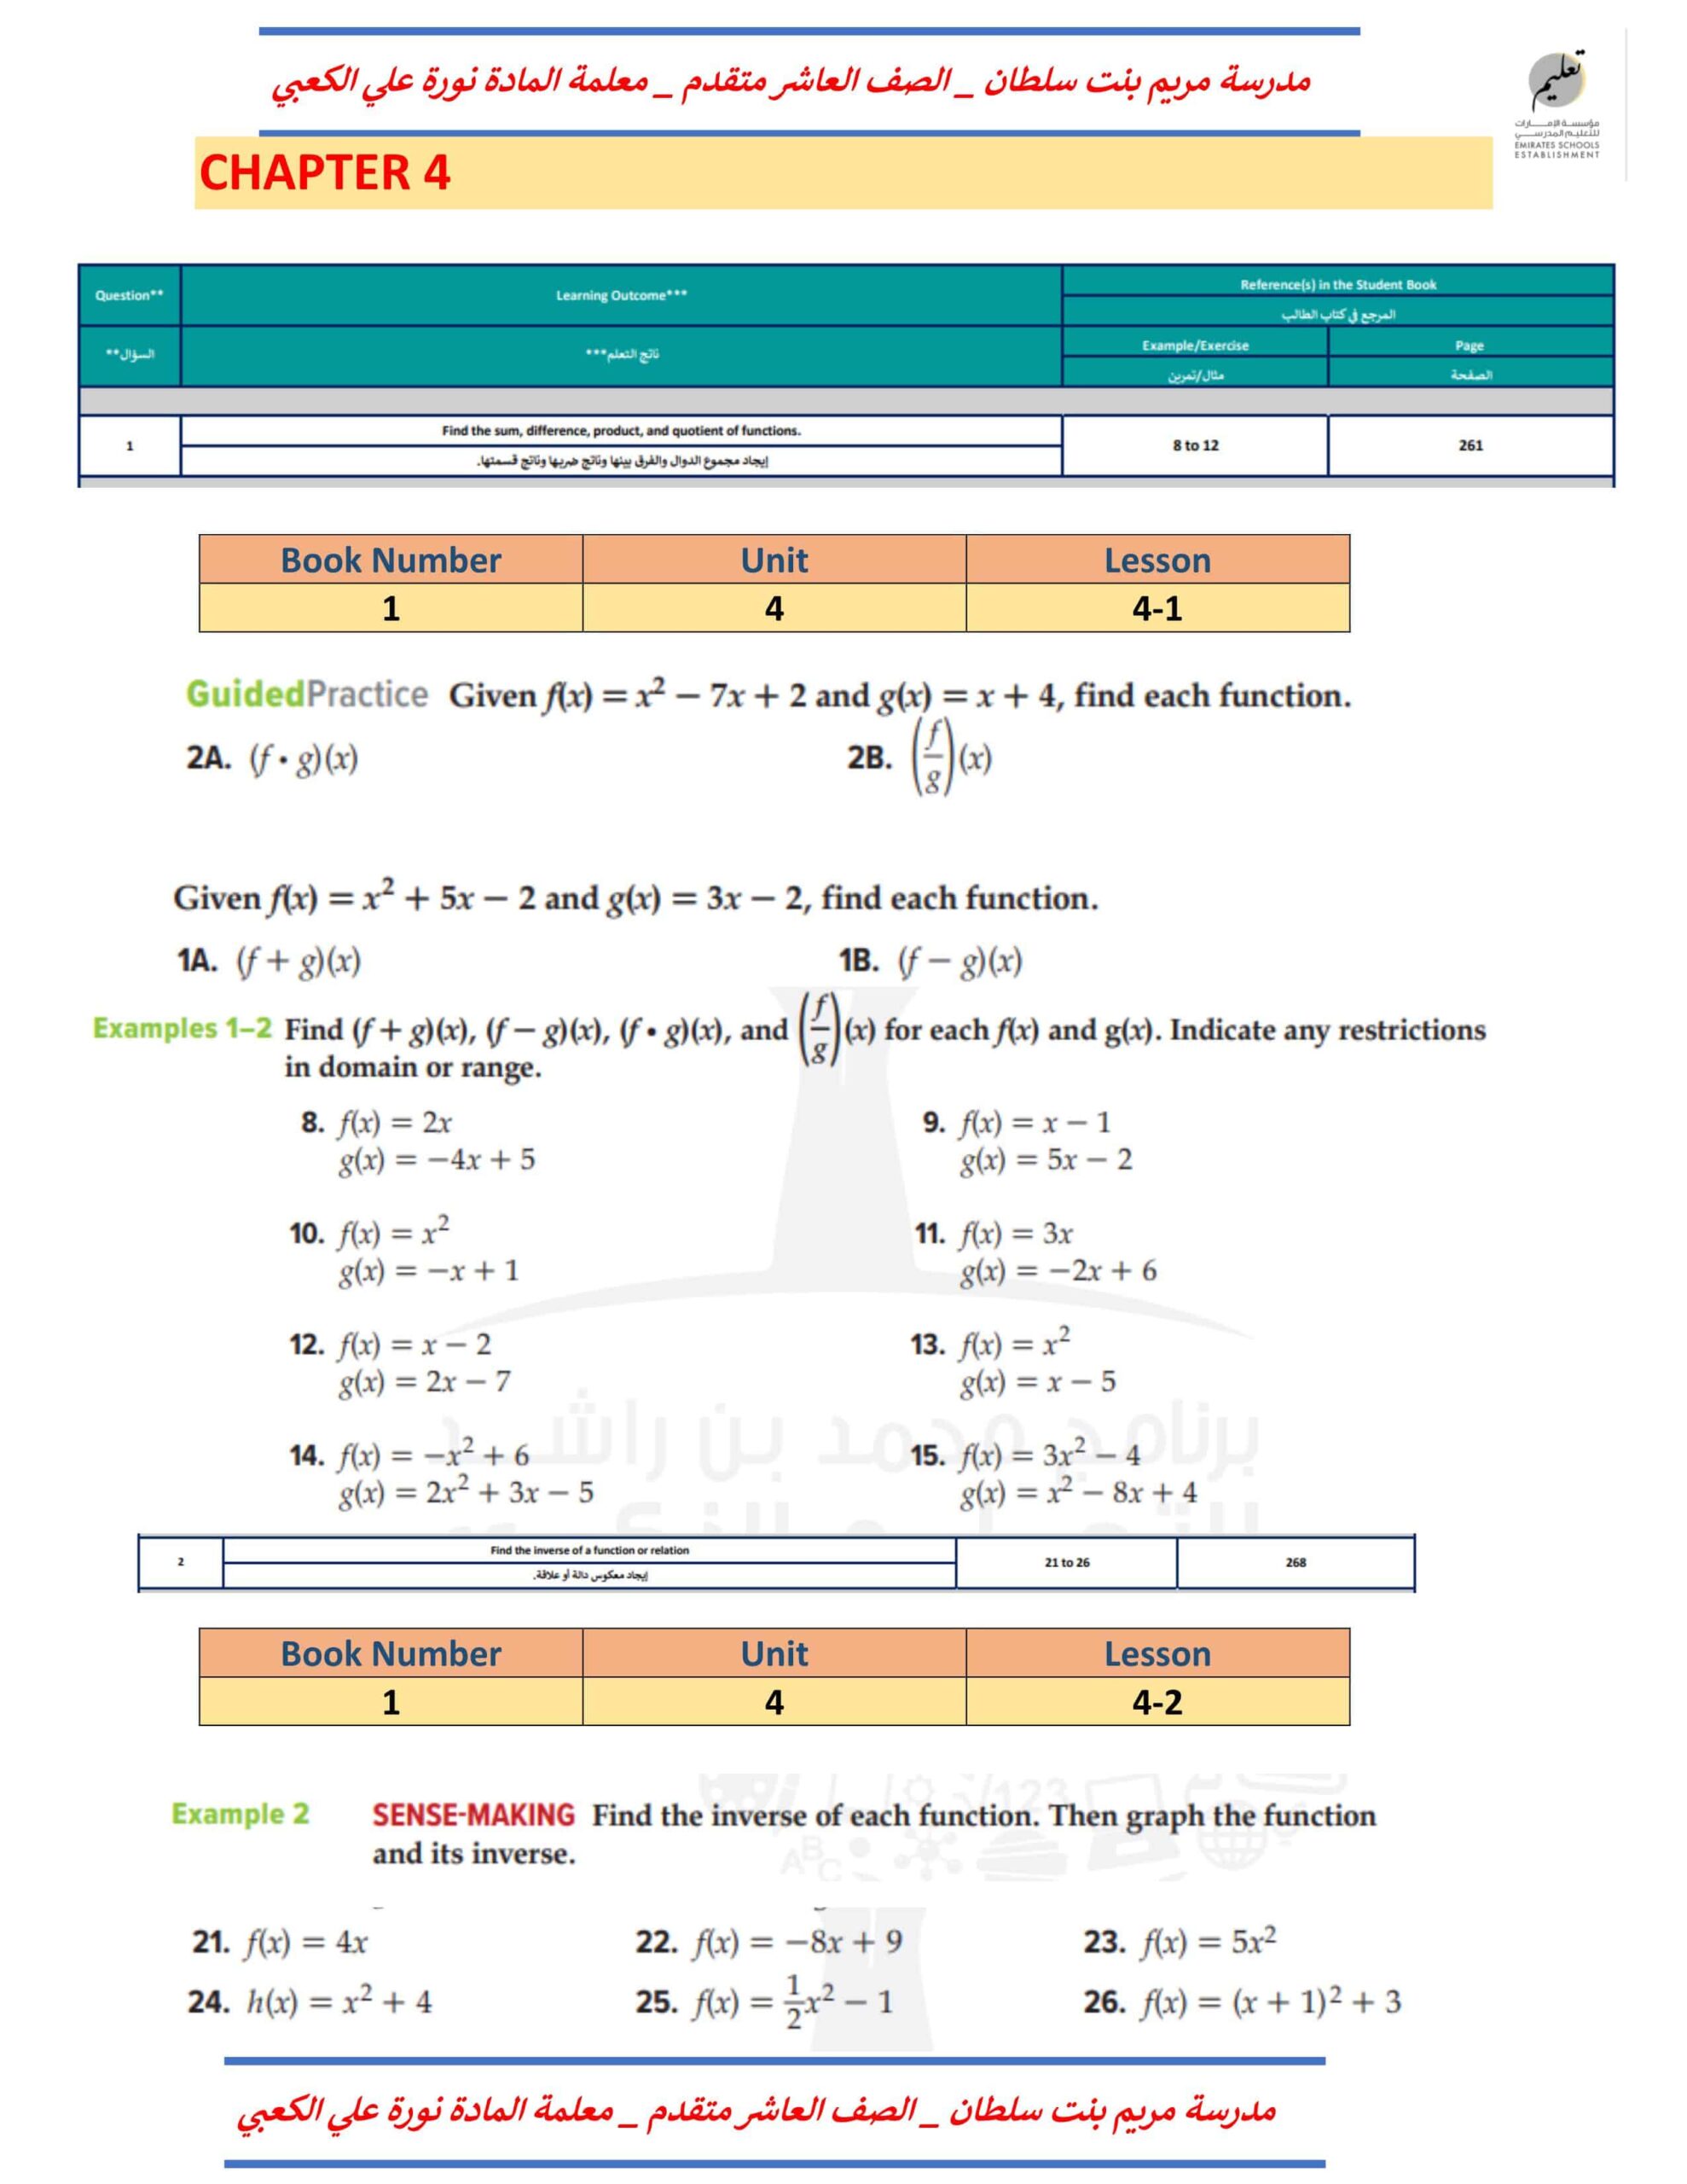 أوراق عمل أسئلة هيكل الاختبار الرياضيات المتكاملة الصف العاشر متقدم